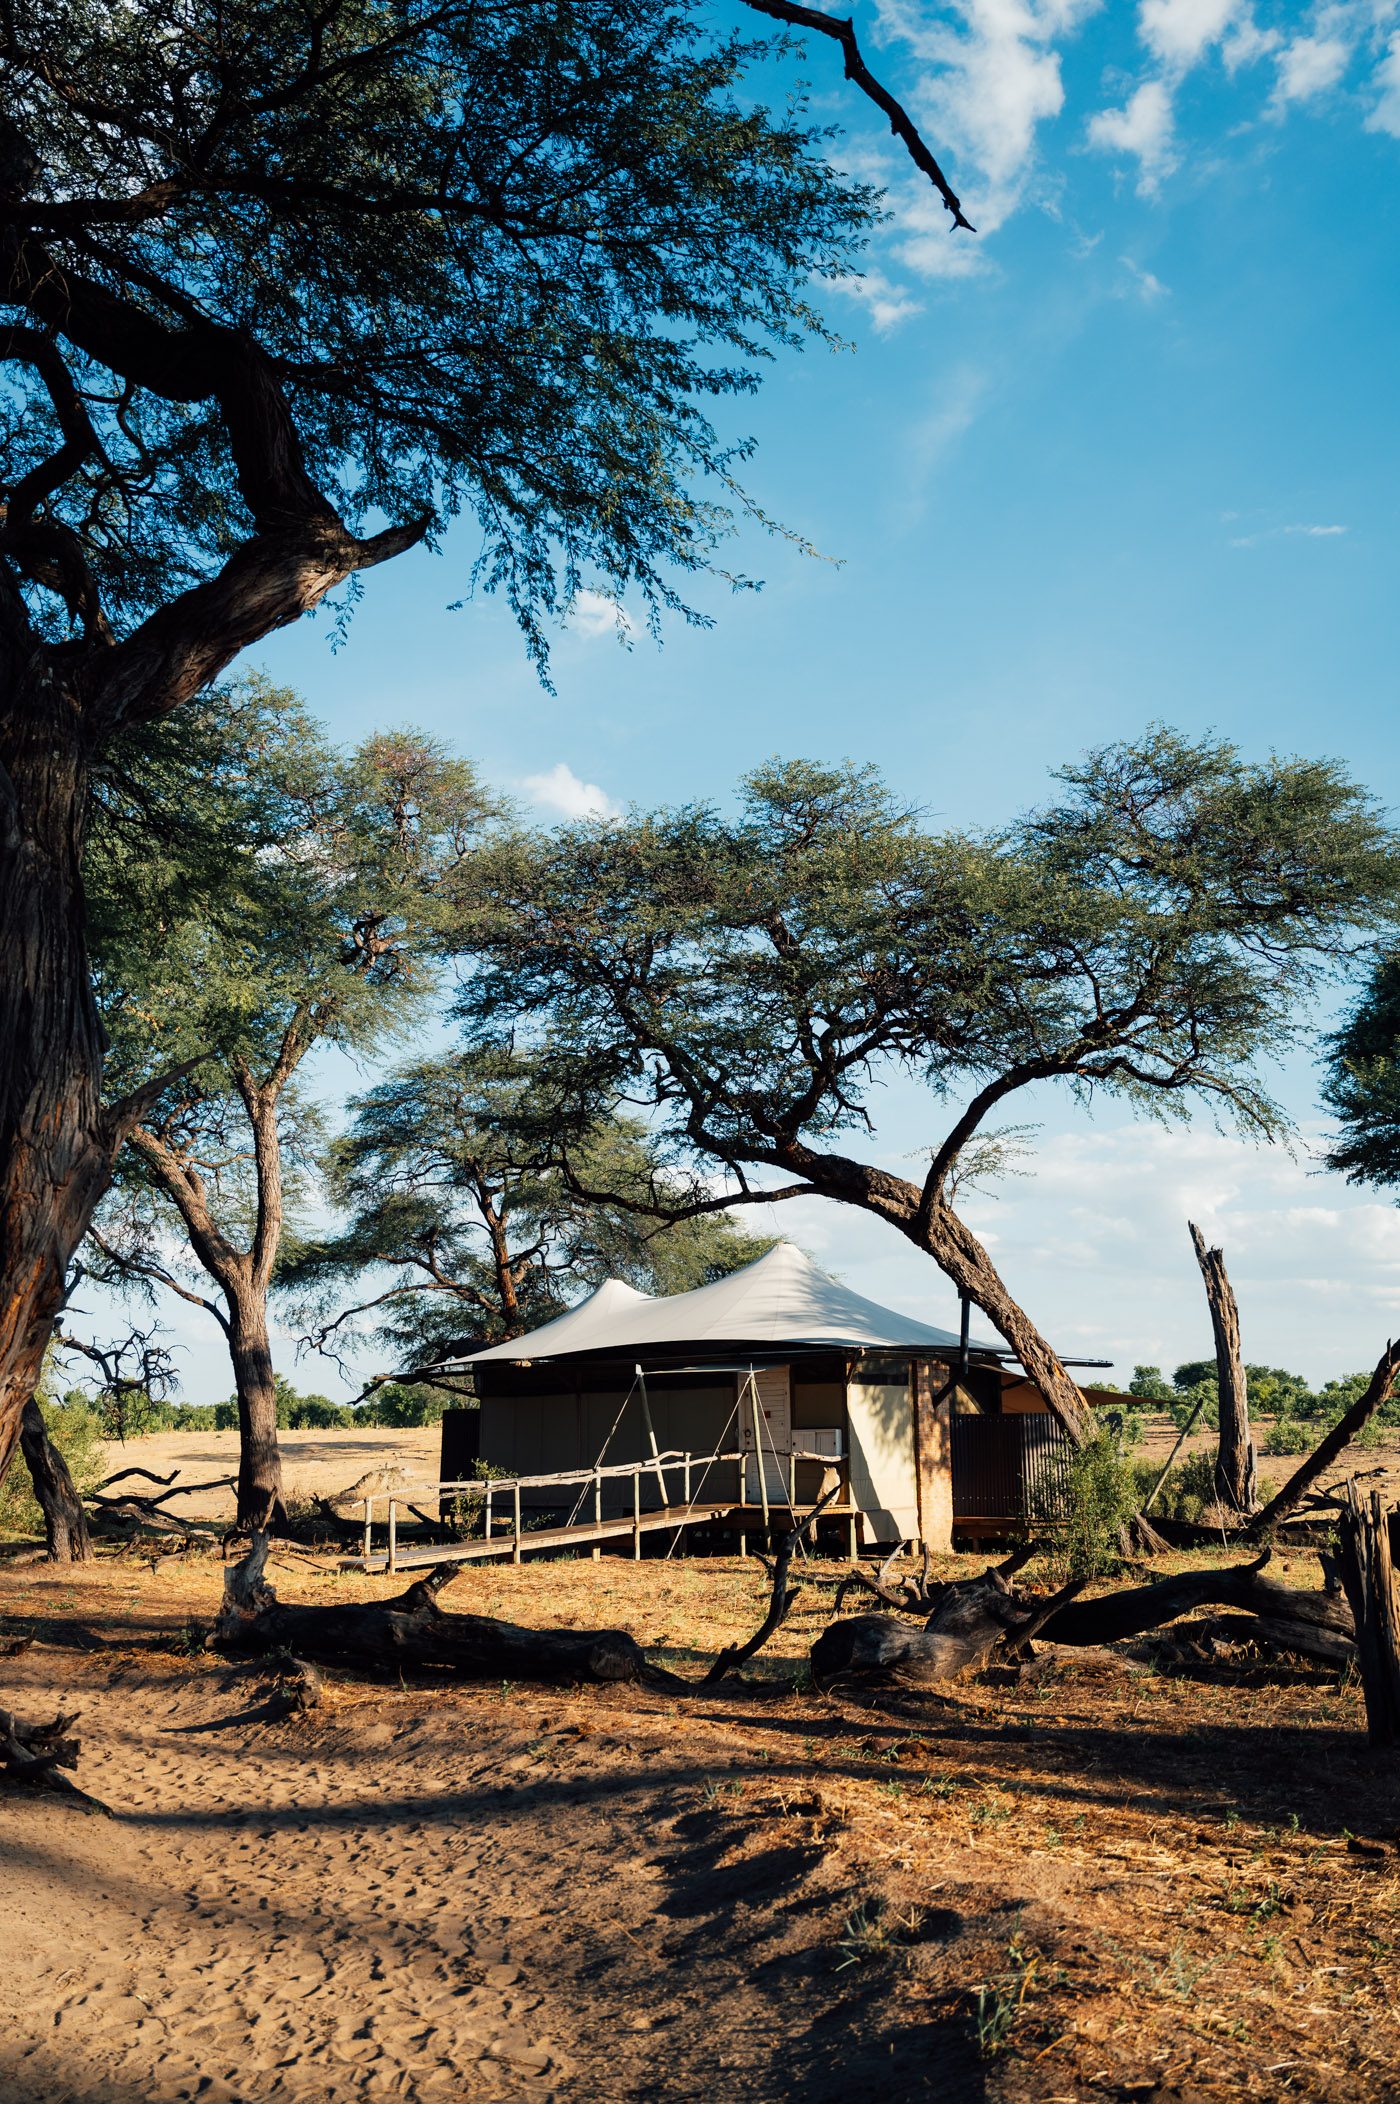 On safari in Hwange National Park in Zimbabwe with African Bush Camps at Somalisa Camp and Somalisa Acacia